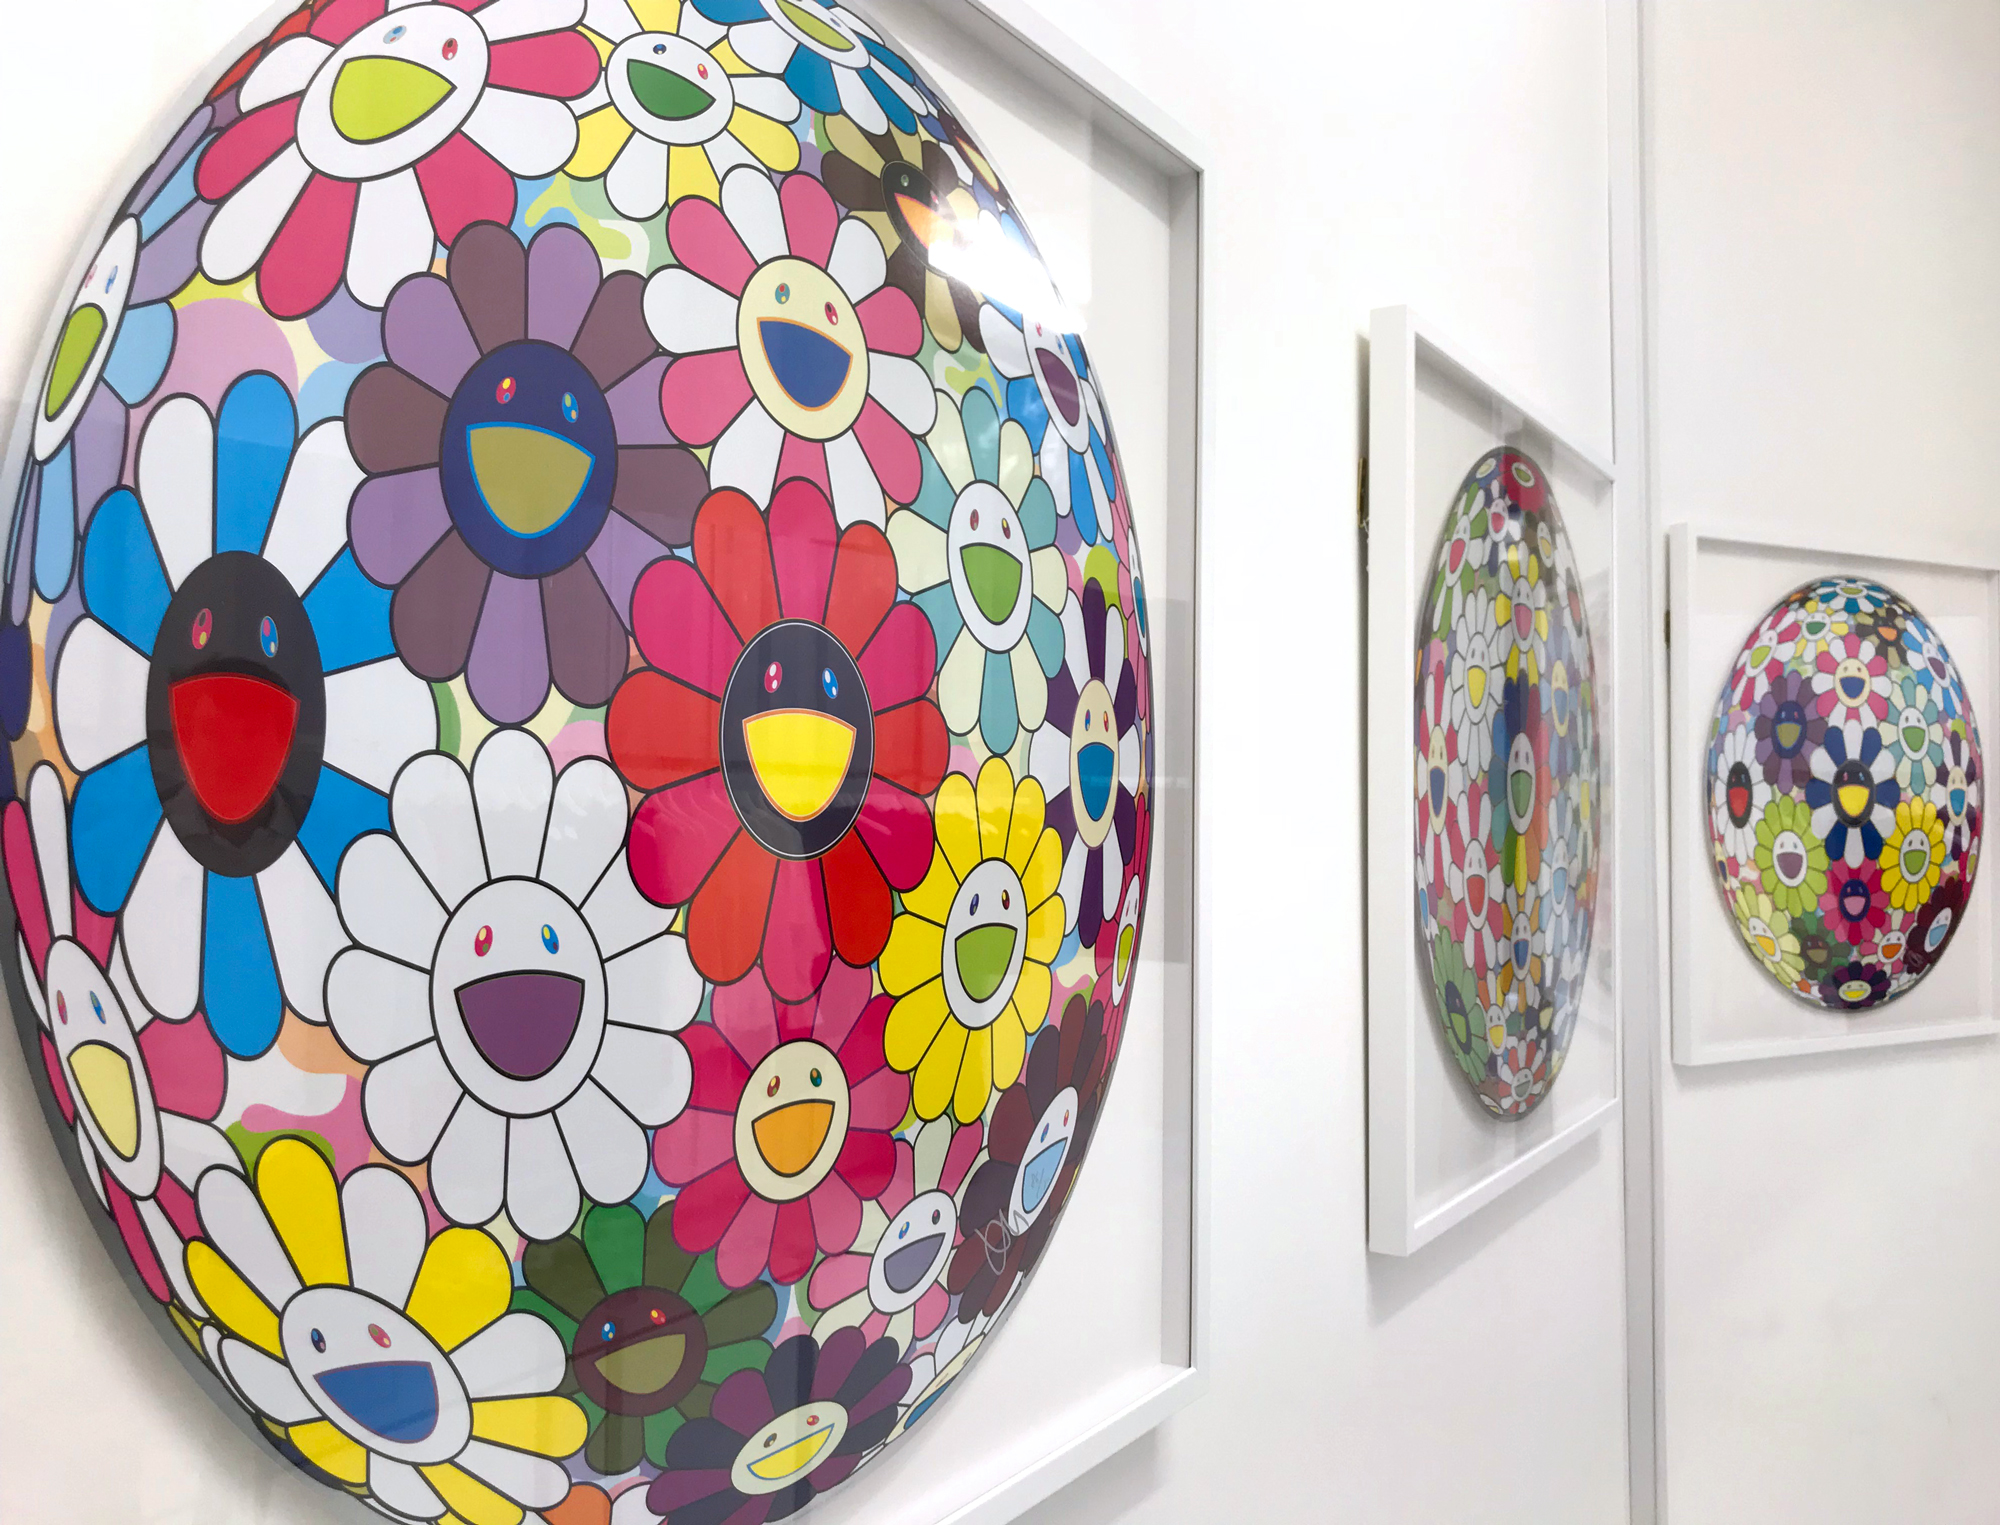 Takashi Murakami Flower Ball Prints Regents Street Maddox Street Butikku